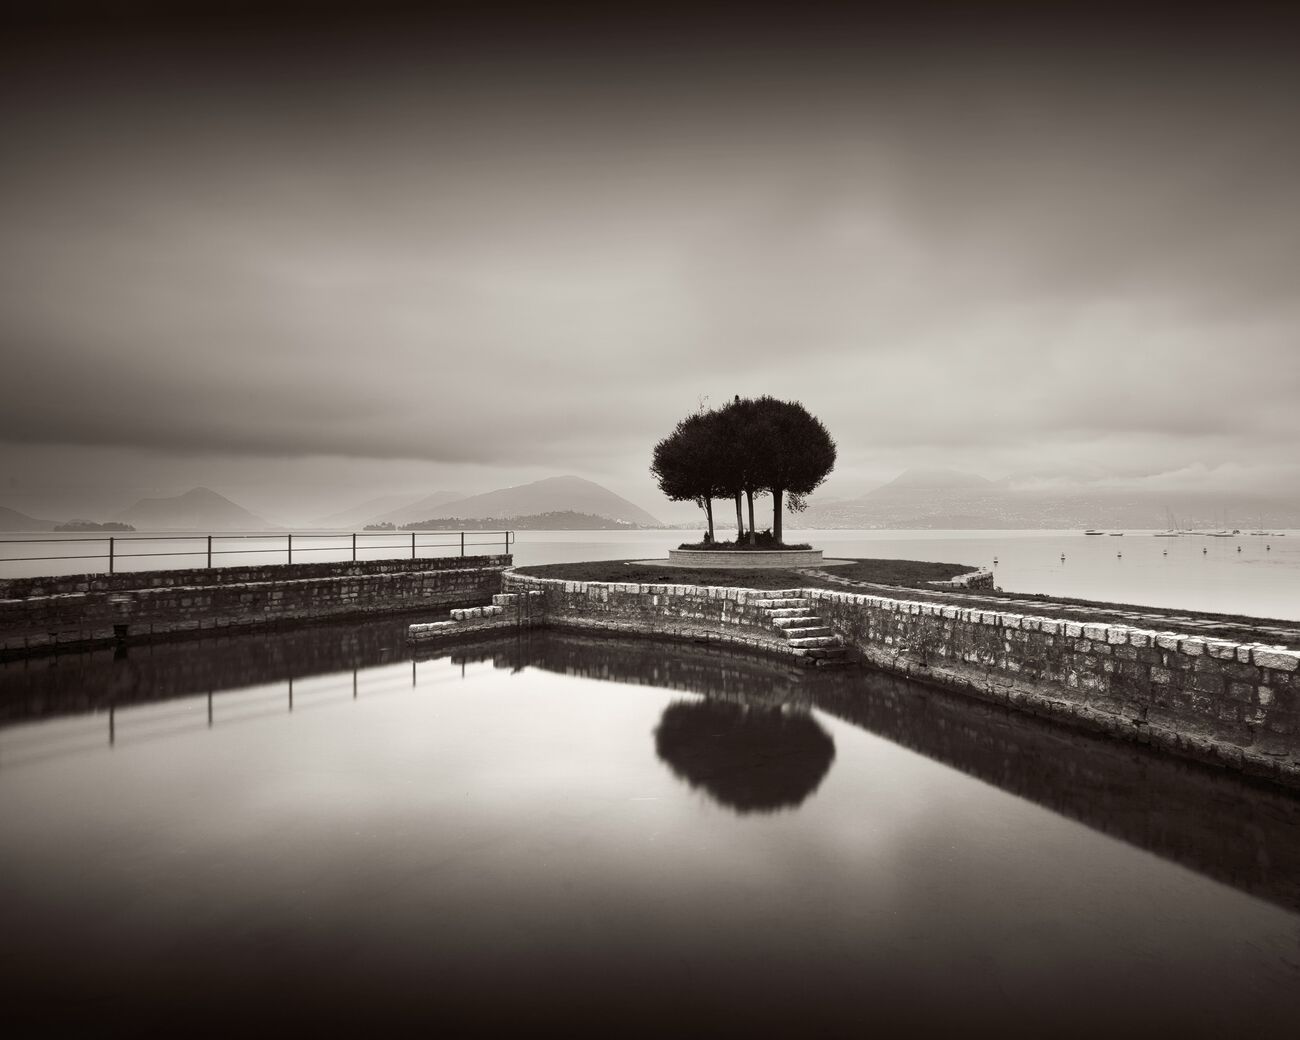 Achat d'une photographie 23 x 18.4 cm, Trees on pier, etude 2. Ref-11608-8 - Denis Olivier Photographie